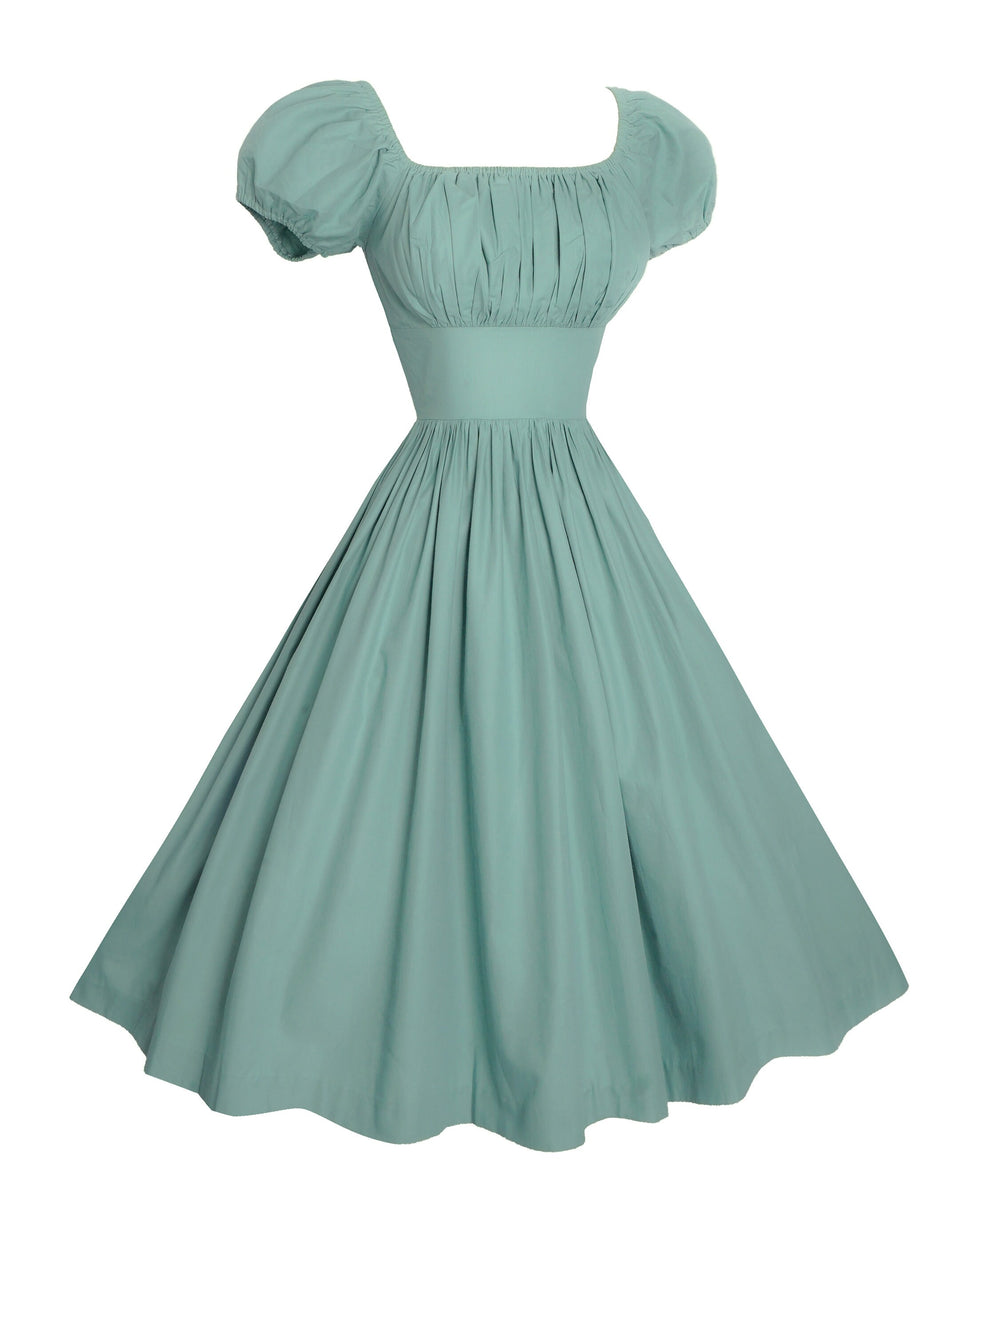 MTO - Loretta Dress in Jade Green Cotton